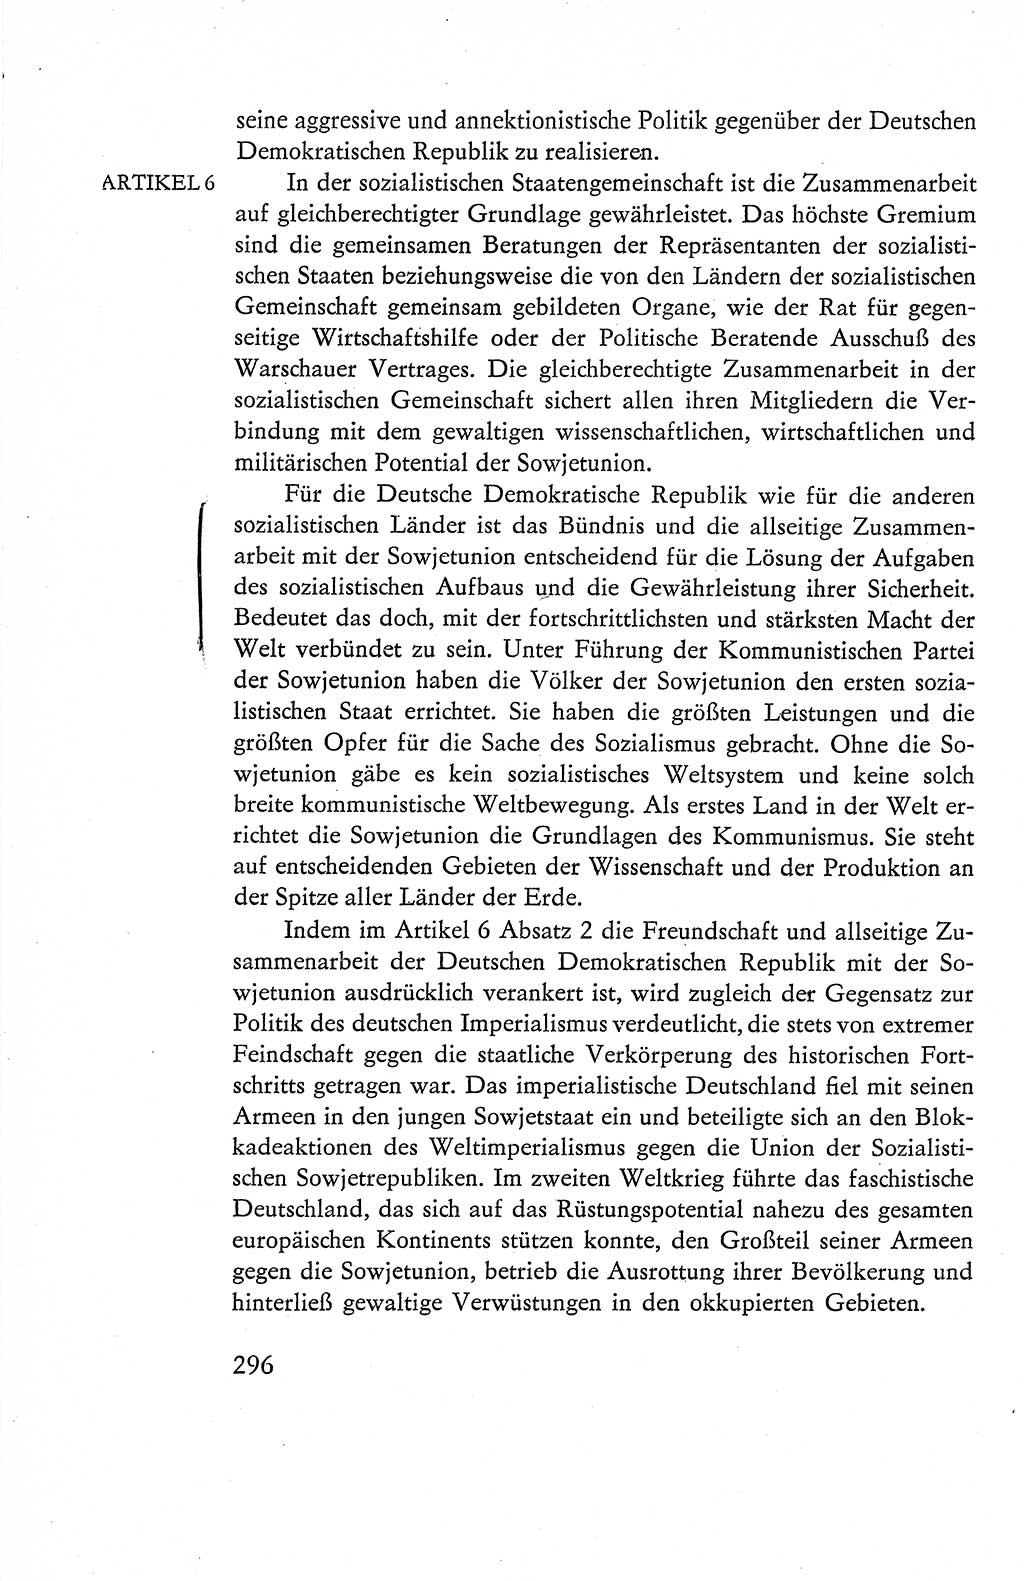 Verfassung der Deutschen Demokratischen Republik (DDR), Dokumente, Kommentar 1969, Band 1, Seite 296 (Verf. DDR Dok. Komm. 1969, Bd. 1, S. 296)